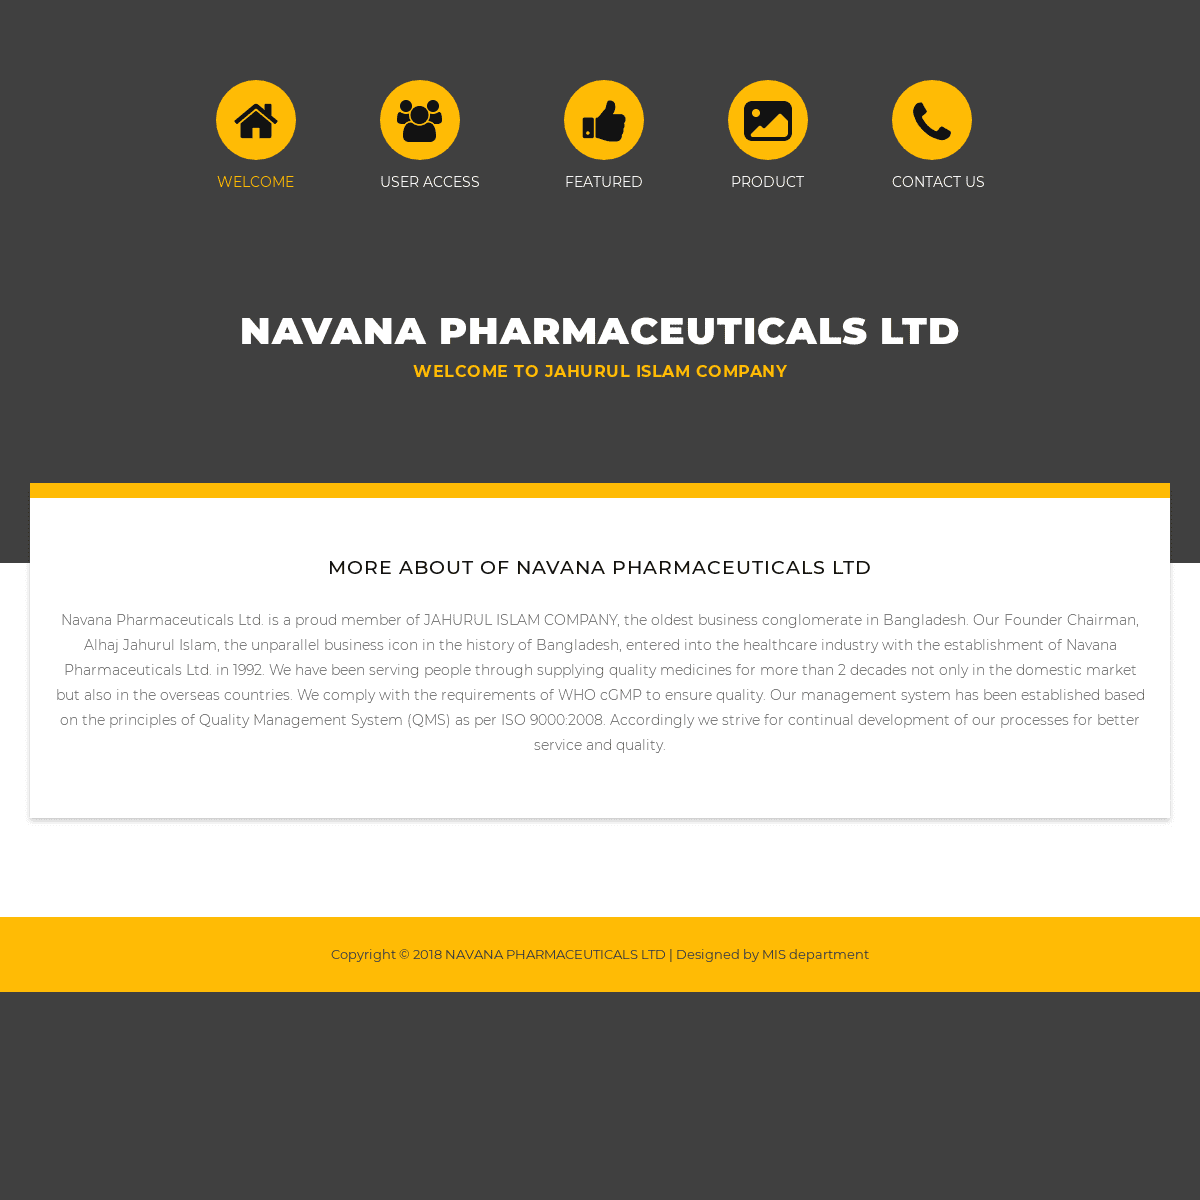 A complete backup of navanapharma.com